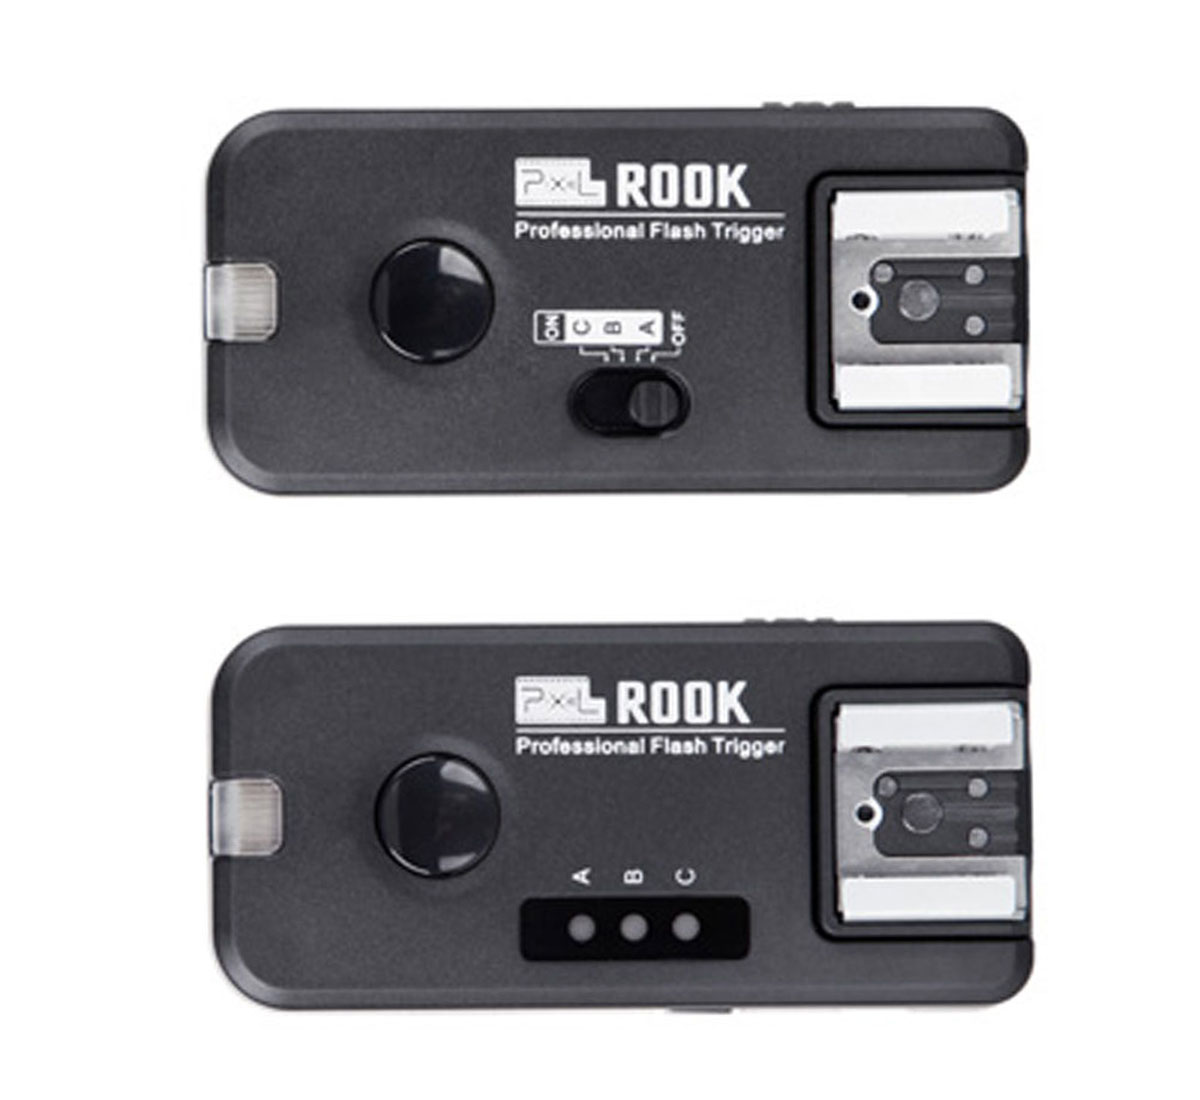 Pixel Rook Empfänger für Canon EOS